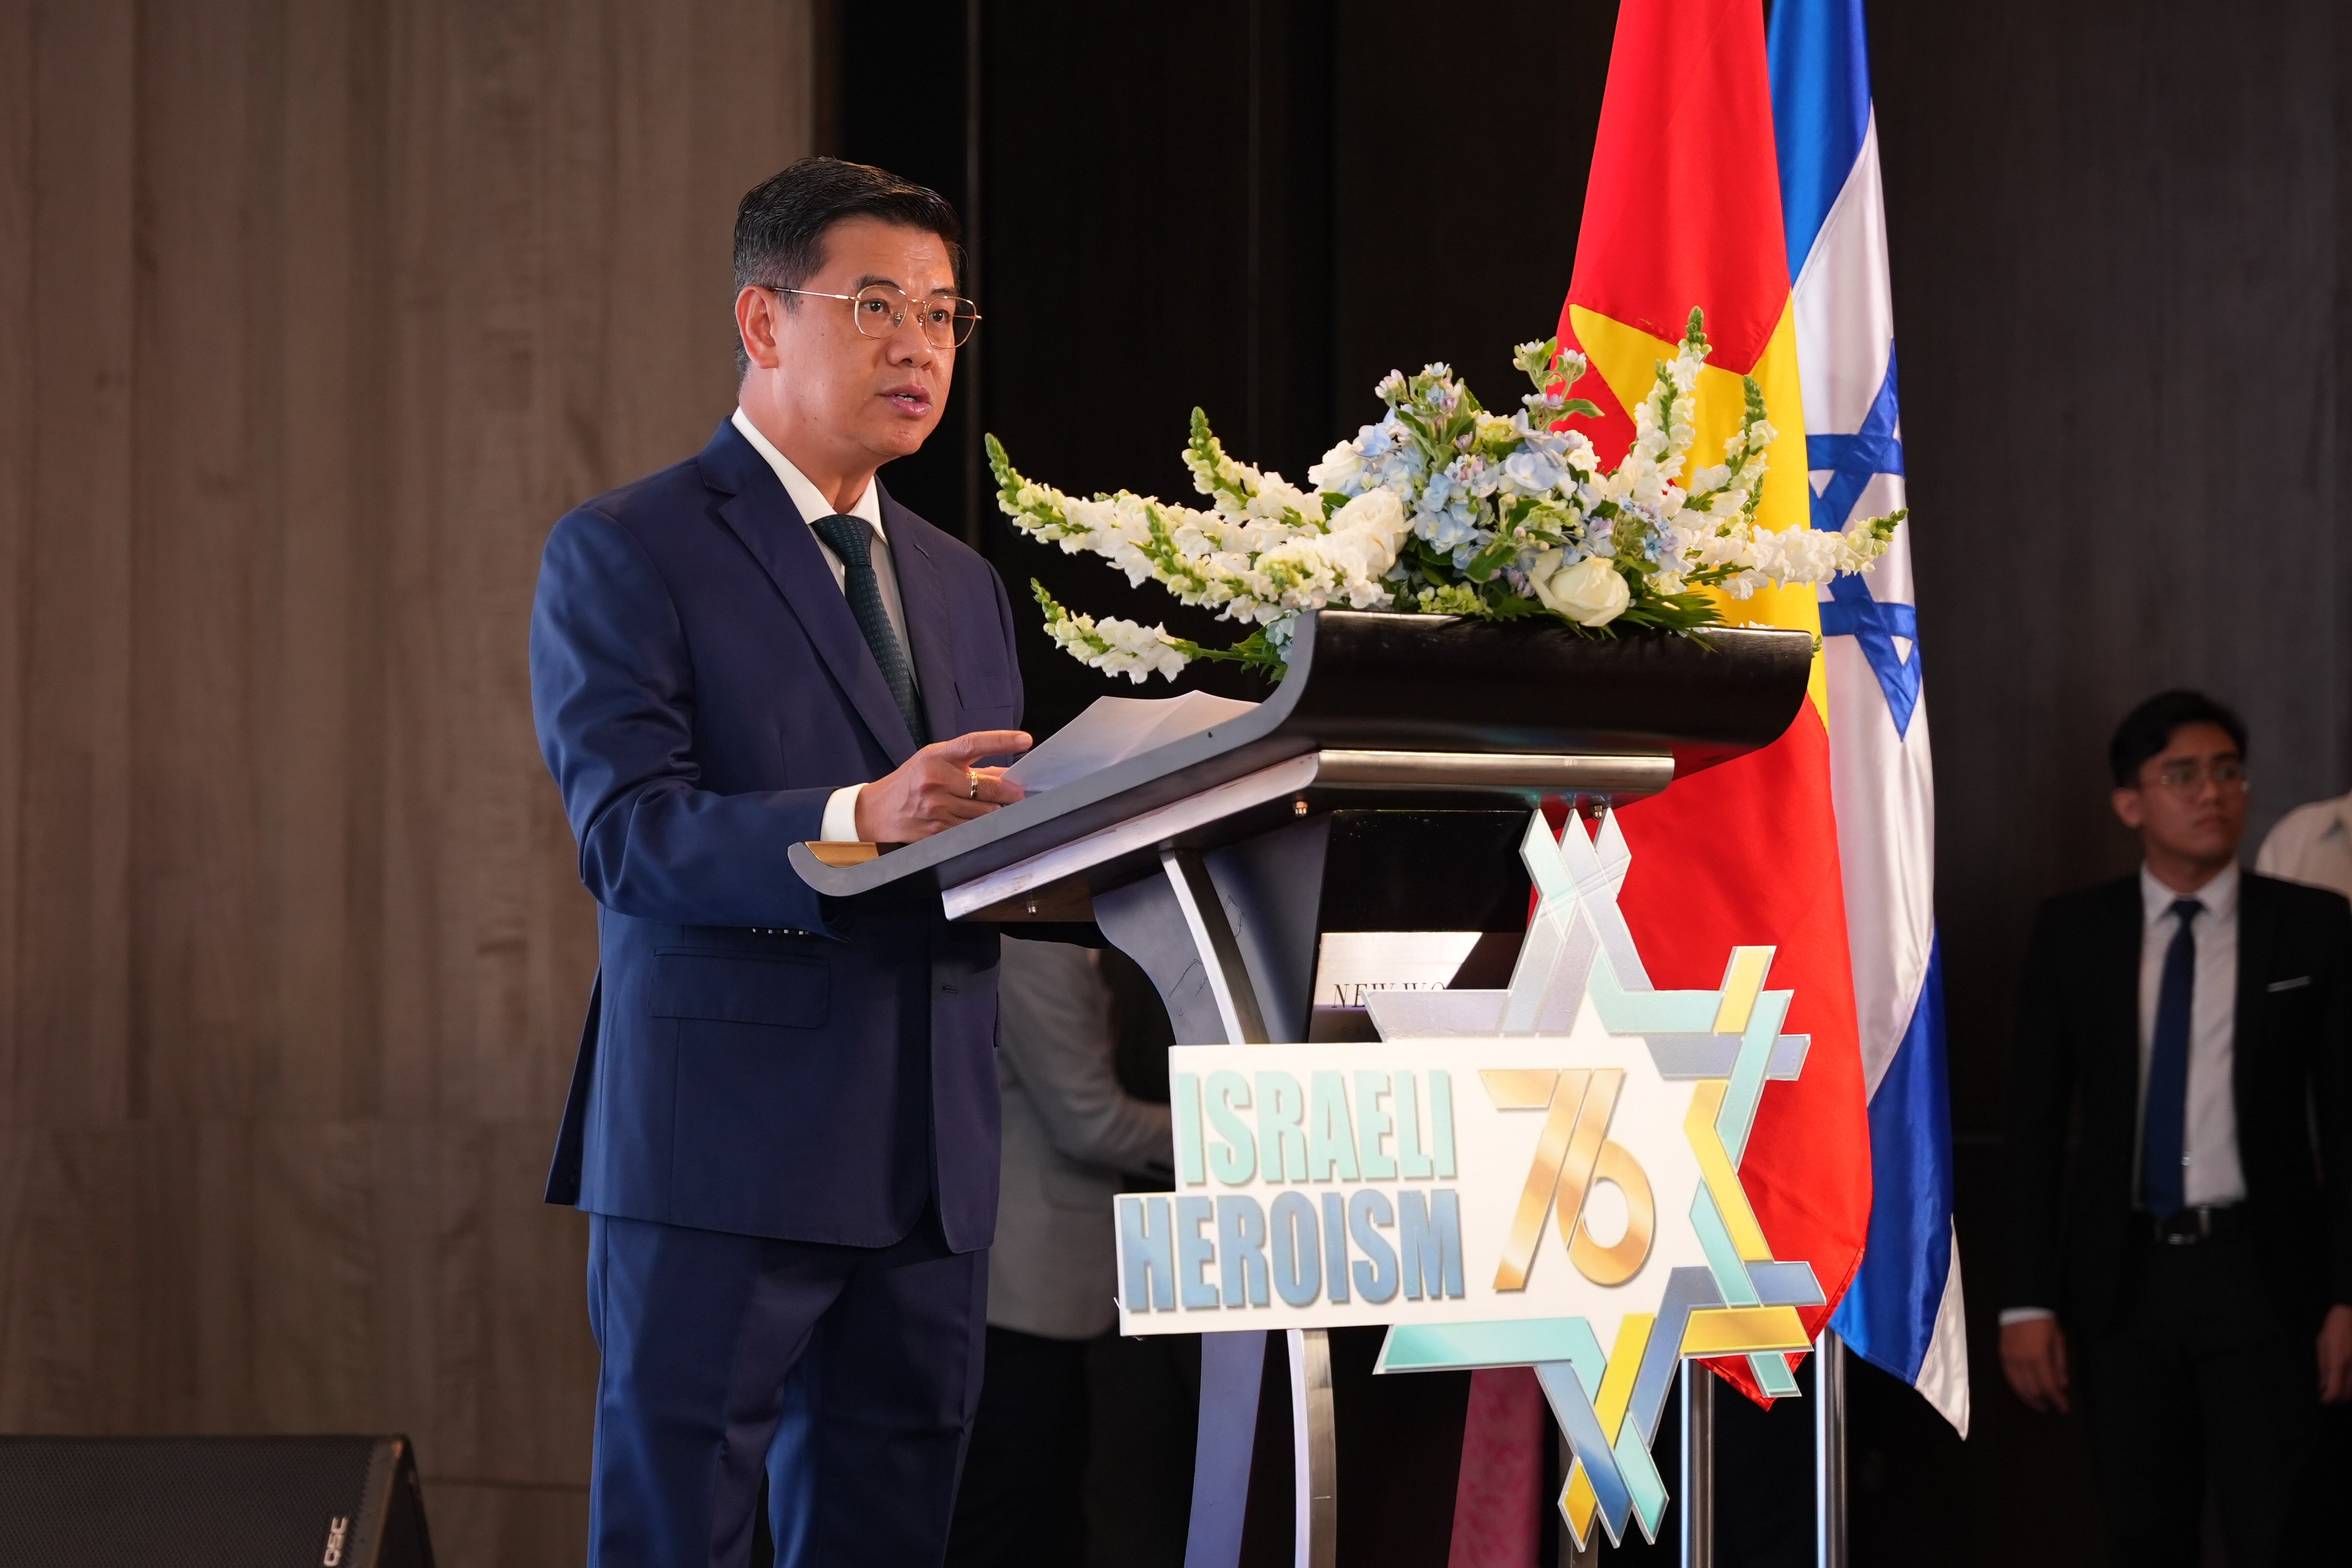 Phó Chủ tịch UBND TP.HCM Nguyễn Văn Dũng phát biểu chúc mừng kỷ niệm 76 năm ngày Độc lập Nhà nước Israel.